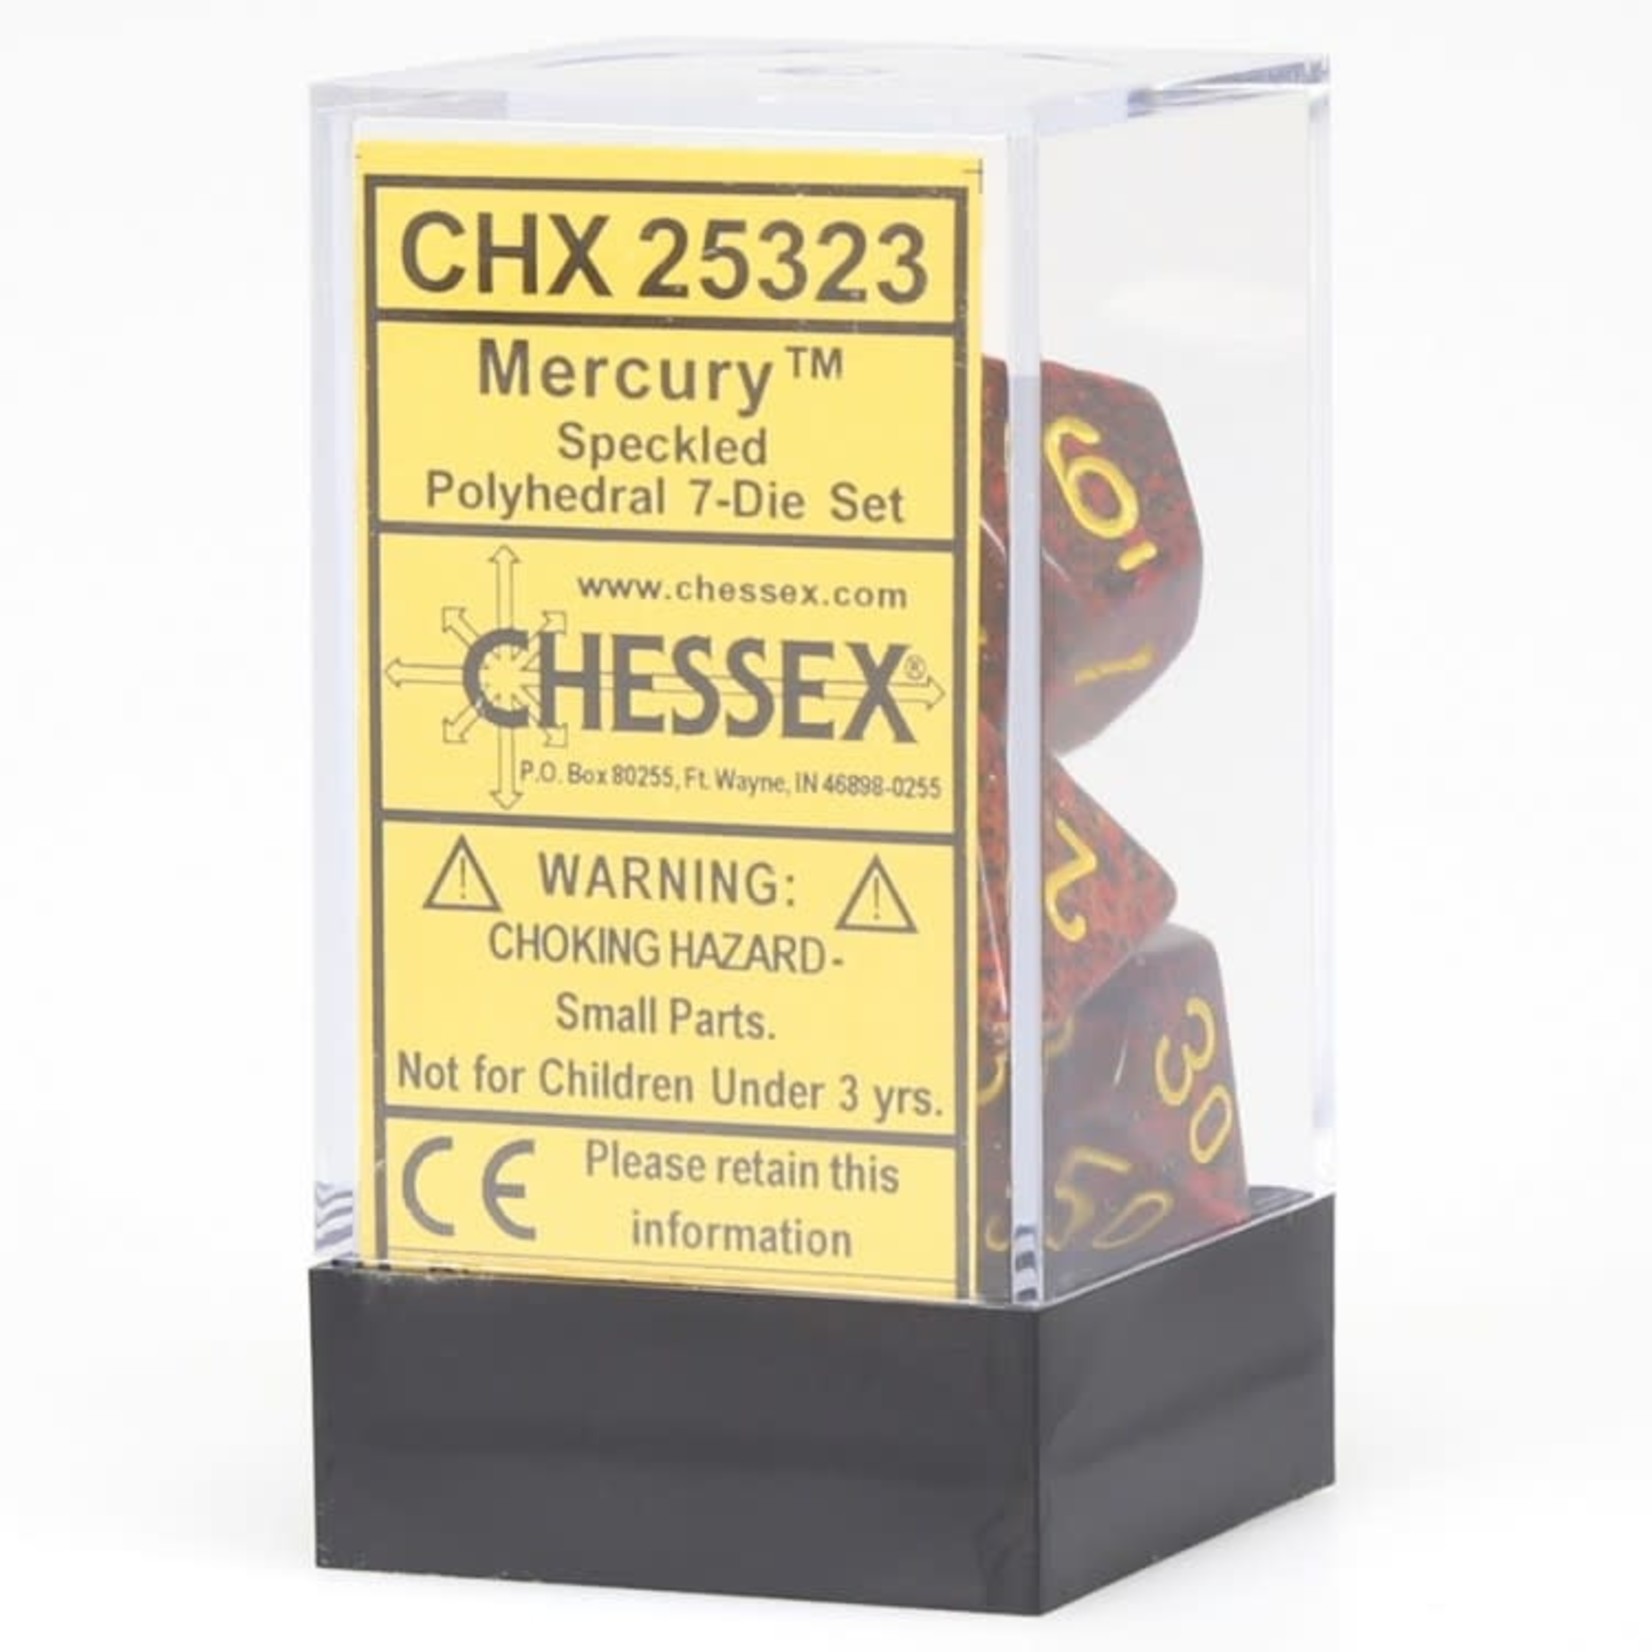 Chessex Chessex Speckled Mercury Polyhedral 7 die set